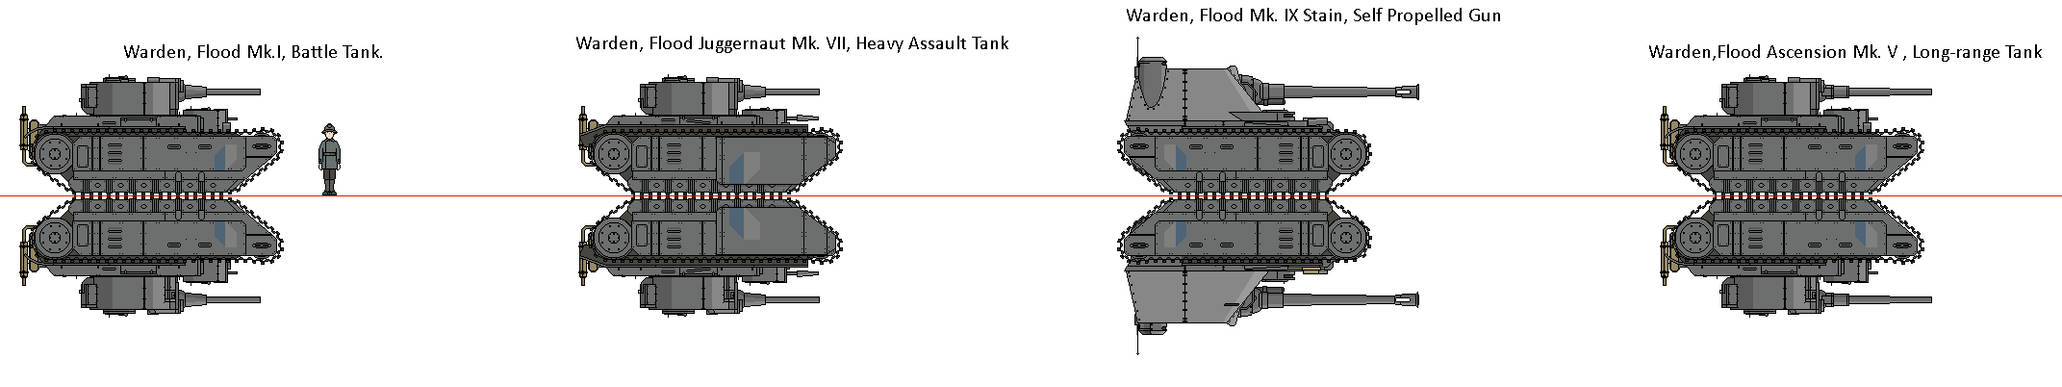 Foxhole: Flood series Tanks.